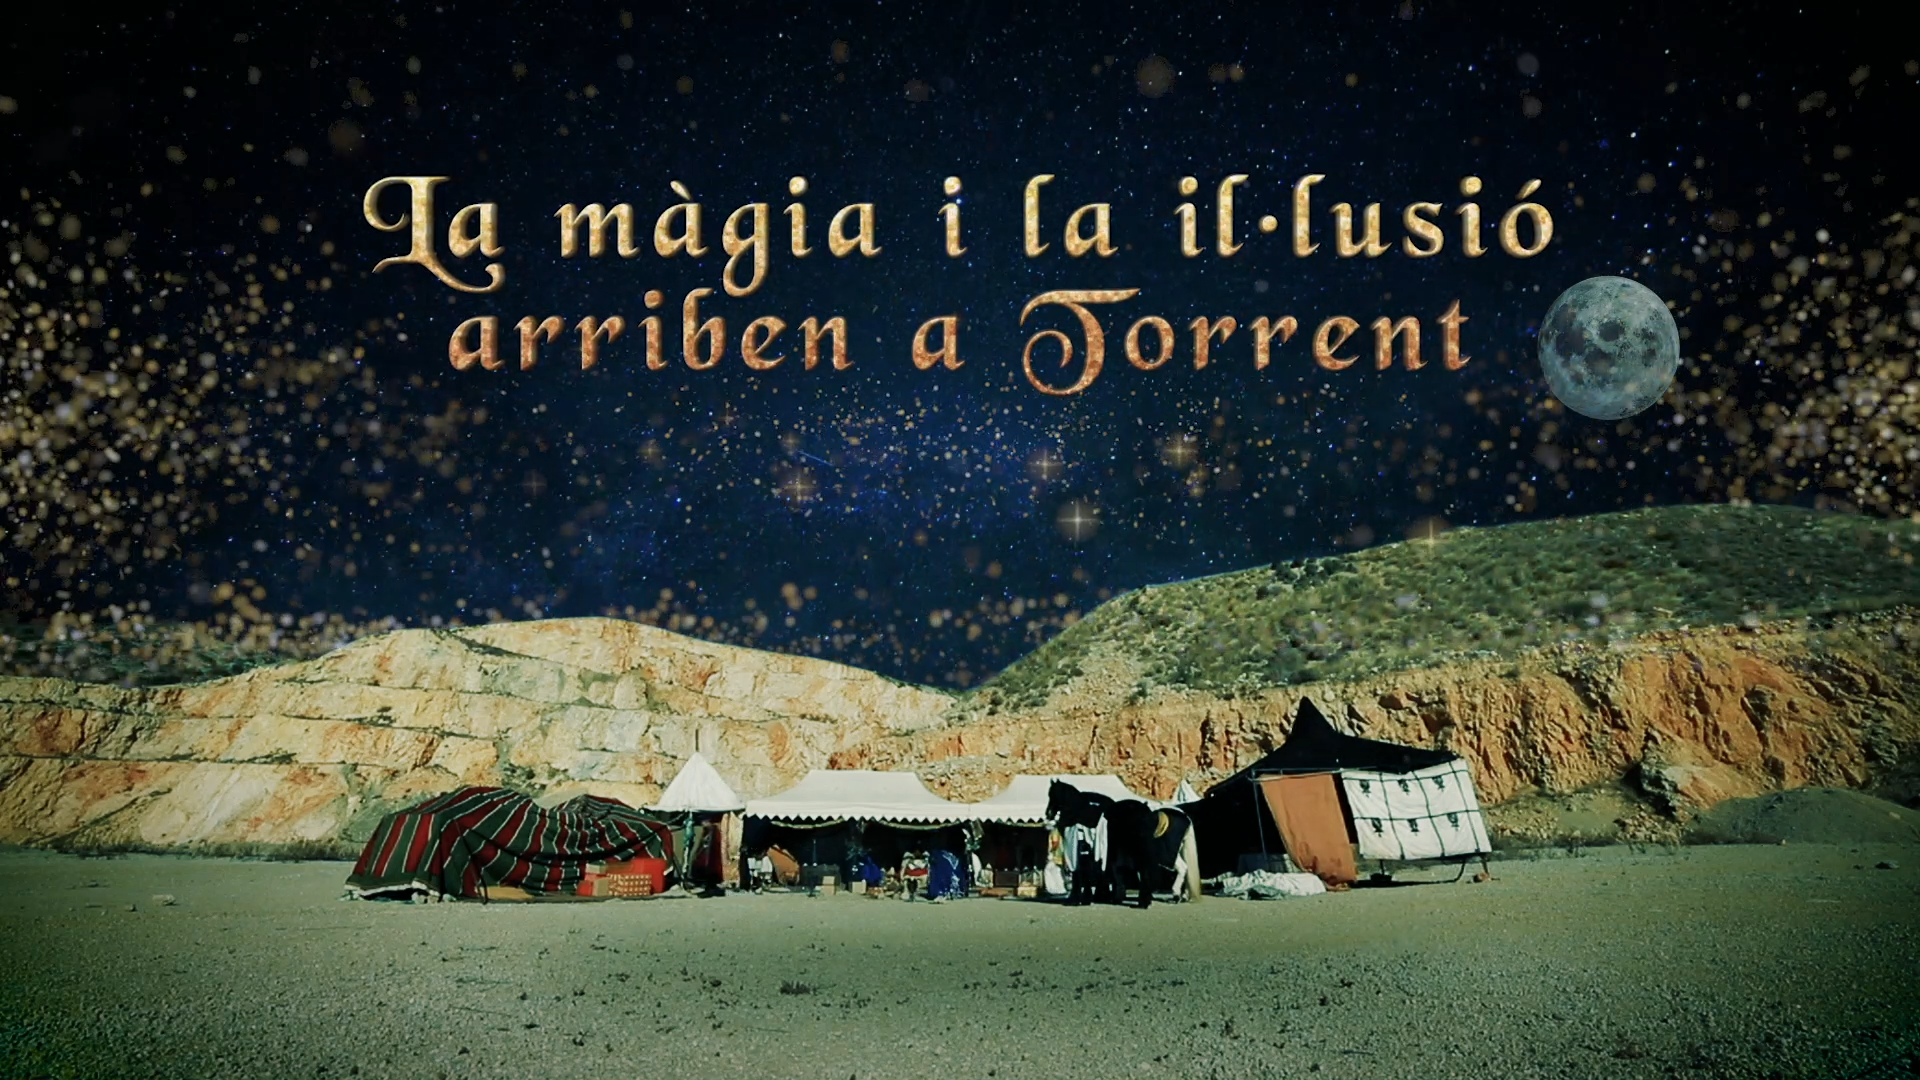 Los Reyes Magos visitarán Torrent el 5 de enero